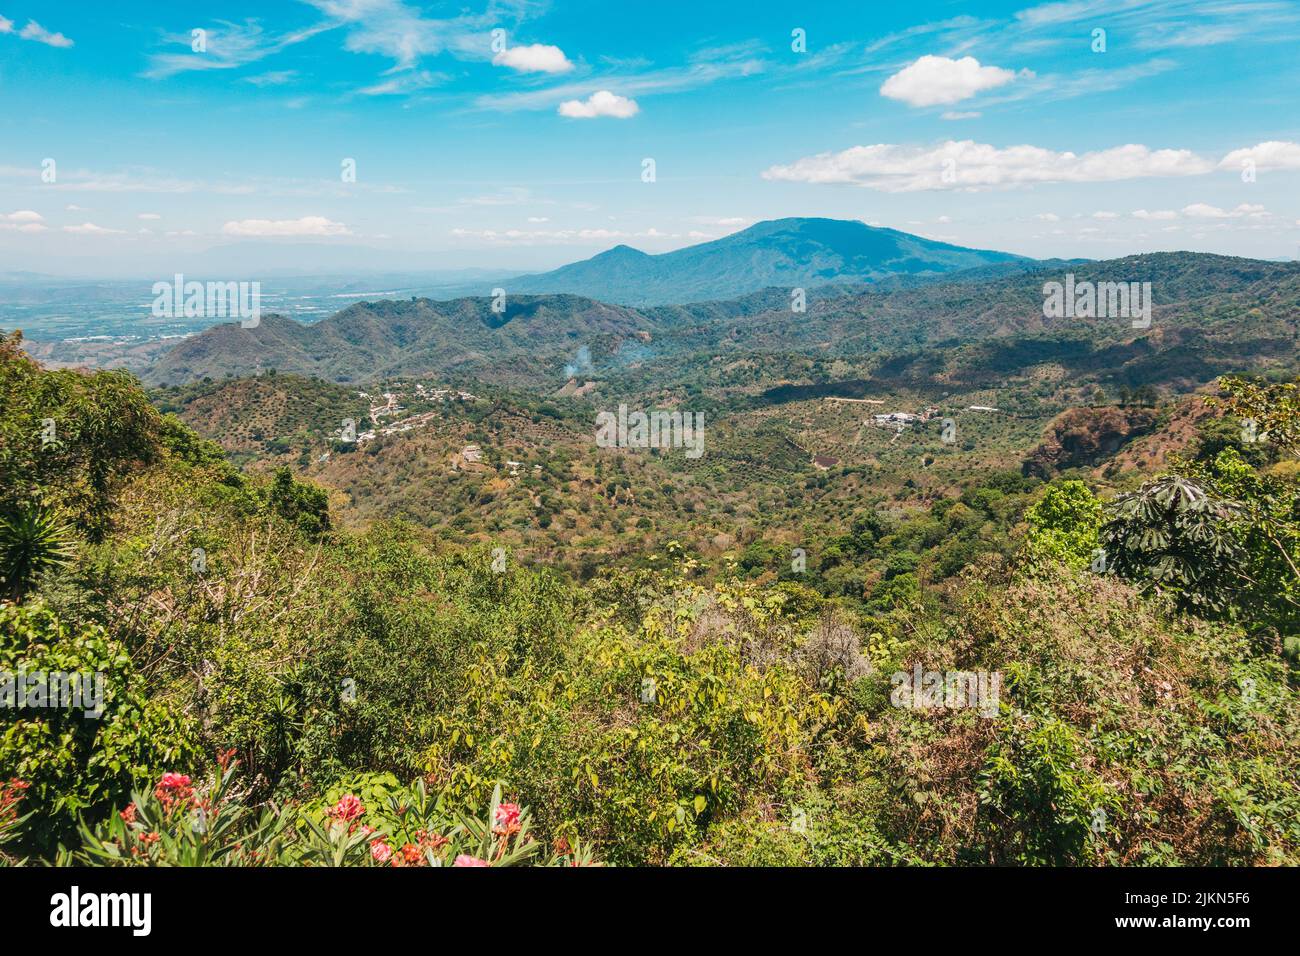 Vue sur la petite ville rurale de Talnique, nichée dans les montagnes intérieures El Salvador Banque D'Images